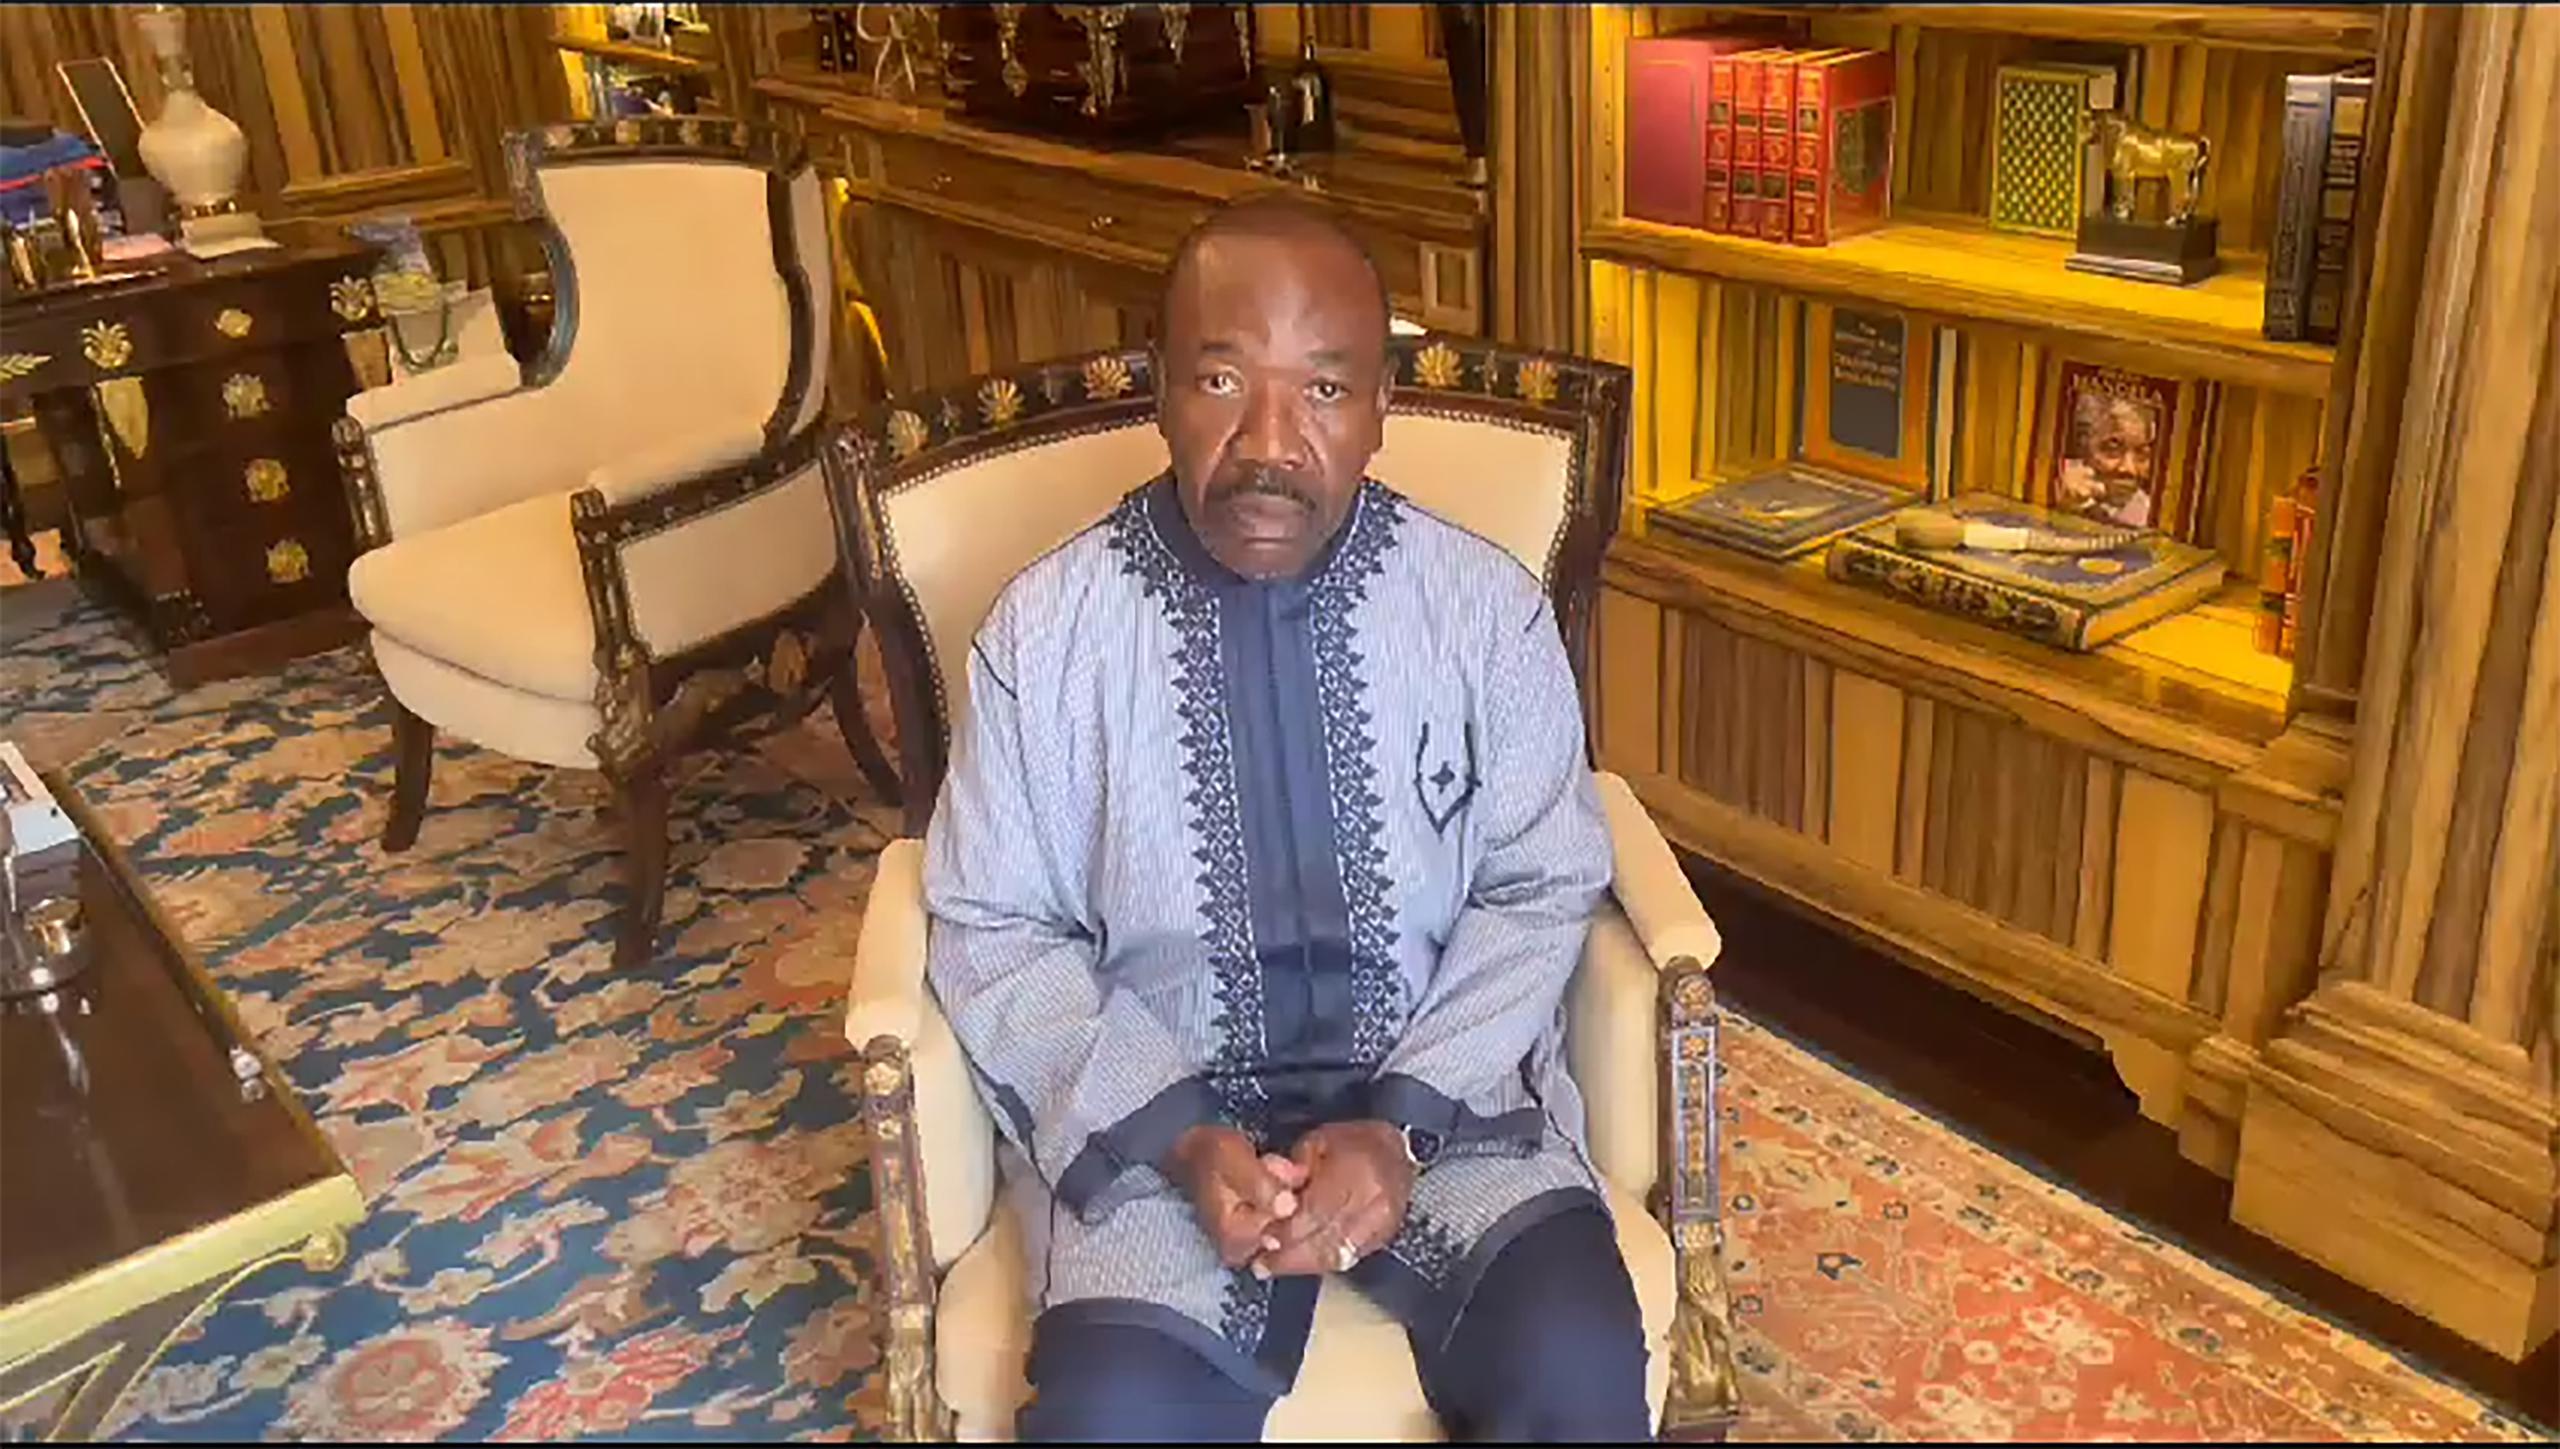 En un video grabado aparentemente desde su residencia, donde estaba retenido, el presidente, Ali Bongo Ondimba, pidió a la gente que “haga ruido” para apoyarle, pero miles salieron a la calle a celebrar el golpe.